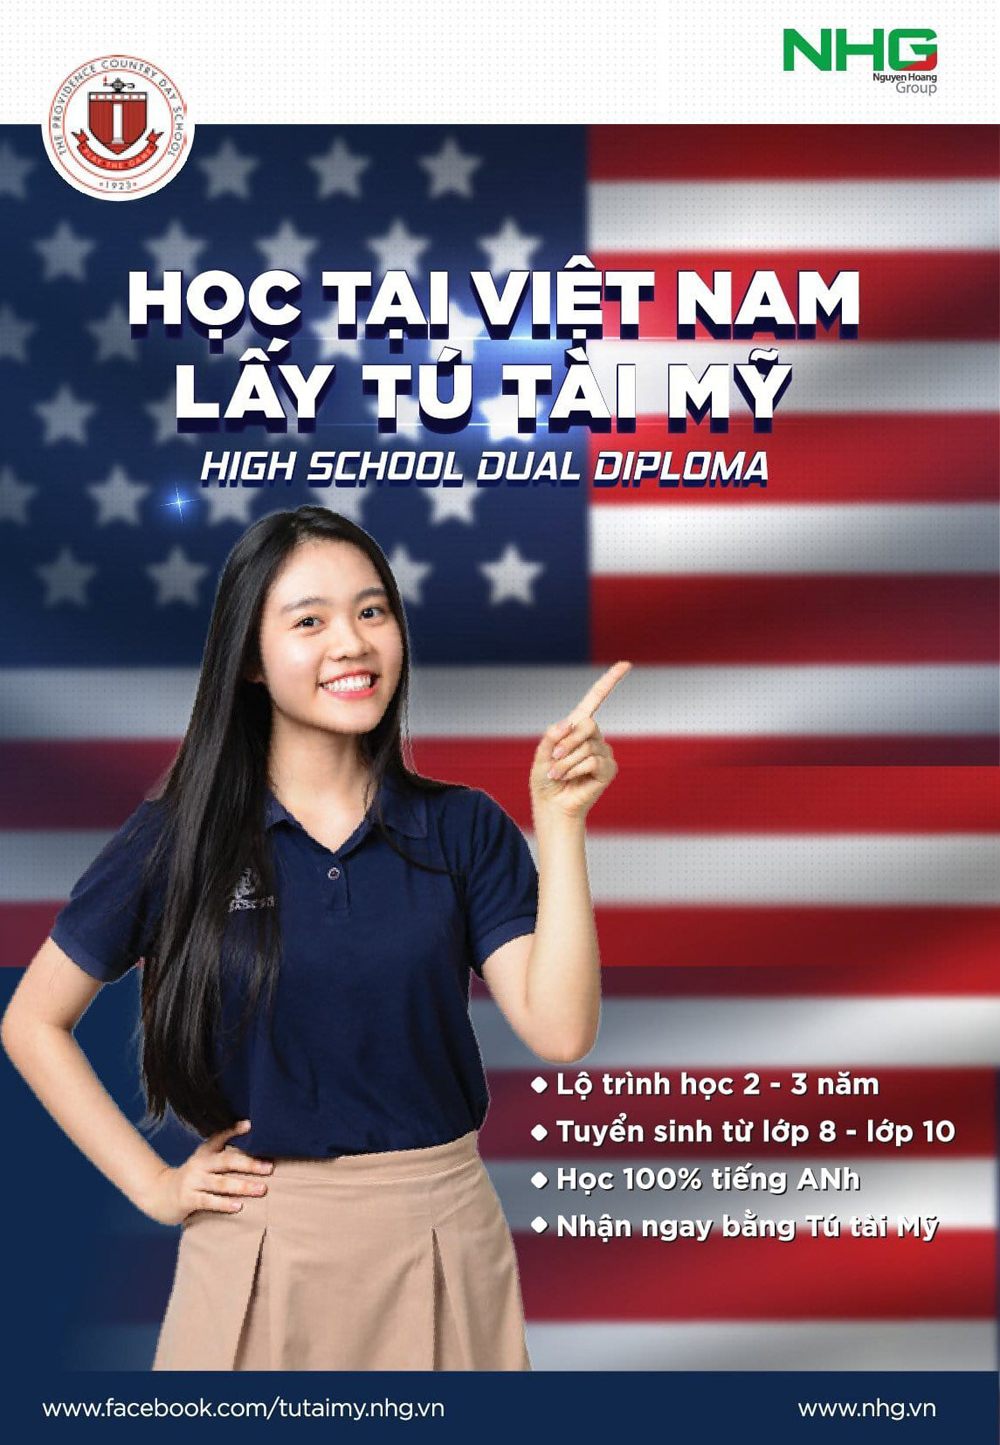 Học tại Việt Nam lấy Tú tài Mỹ